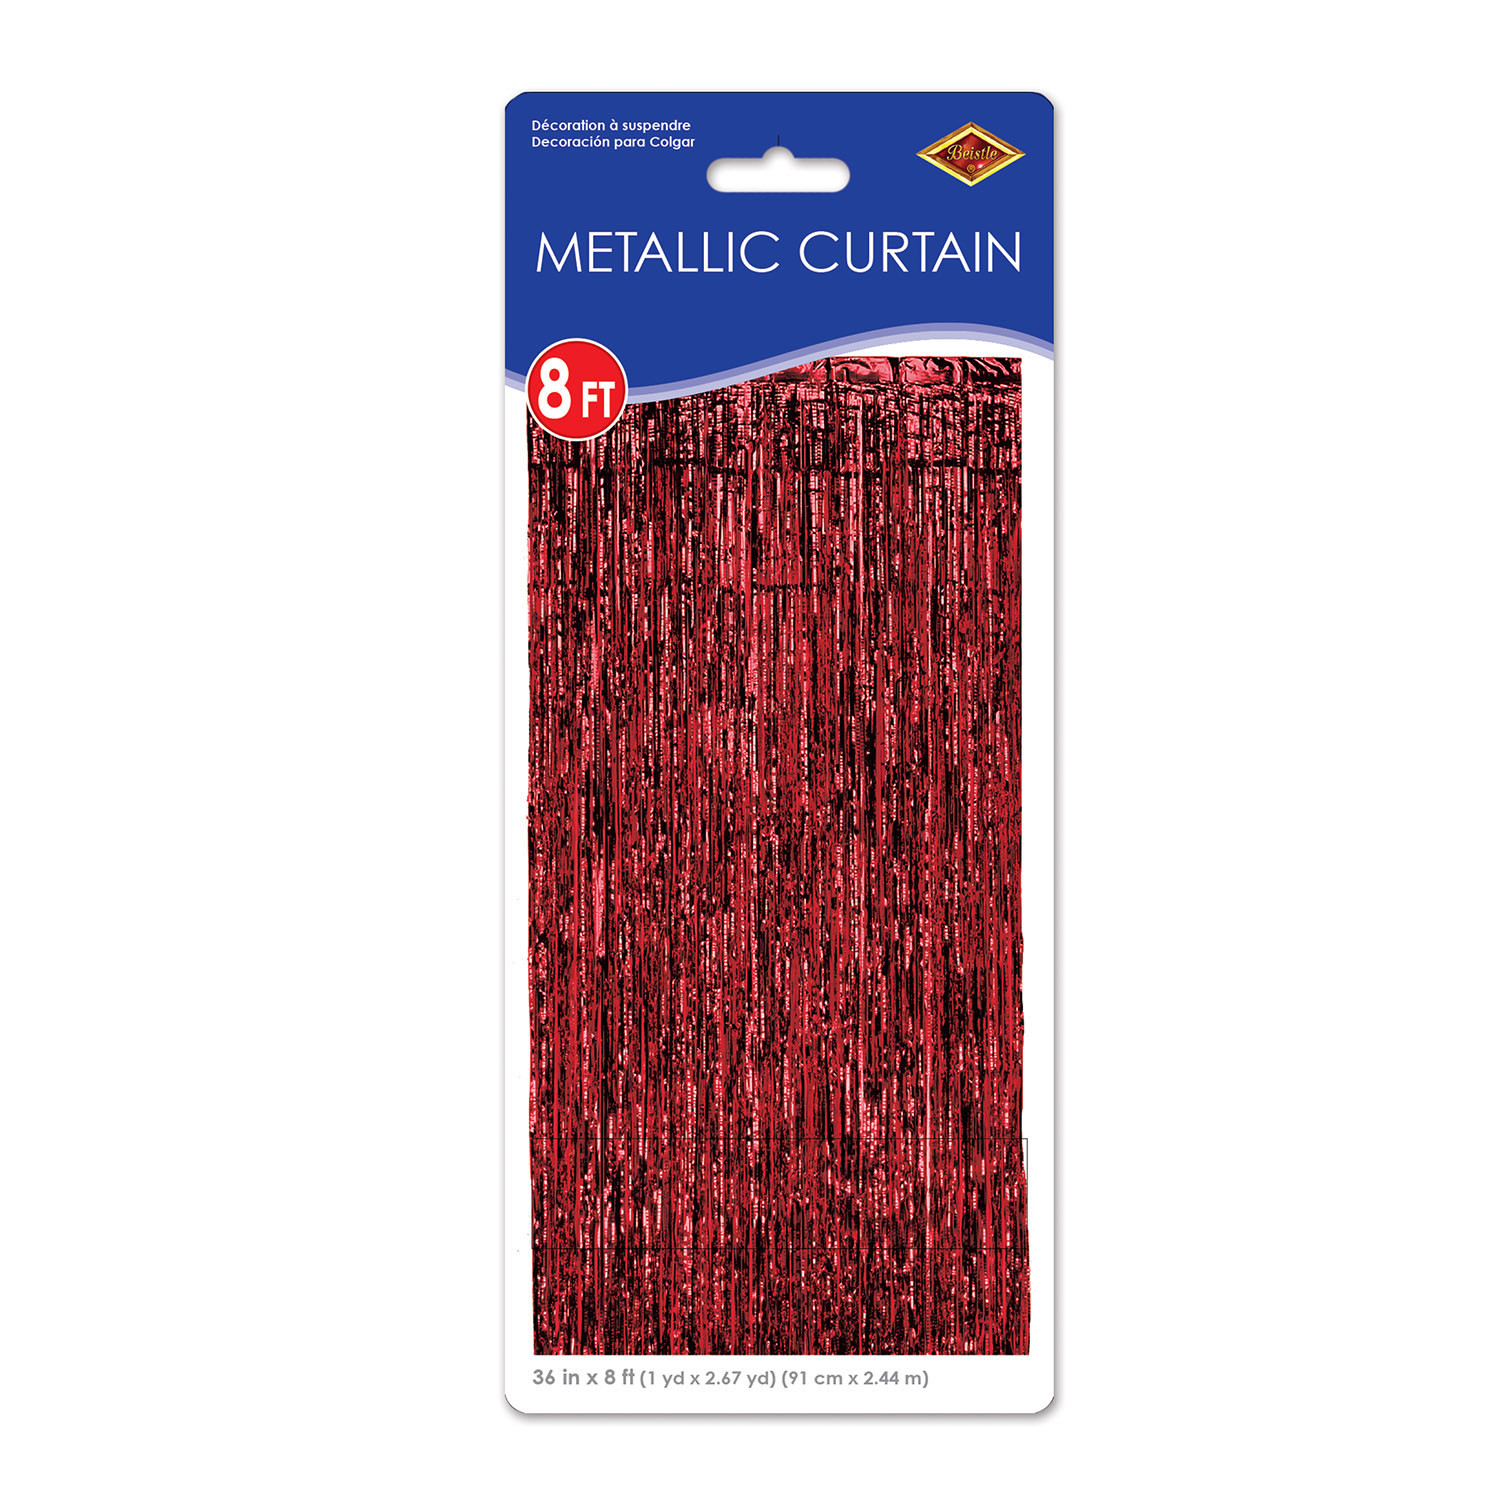 Red metallic Strand door way curtain.